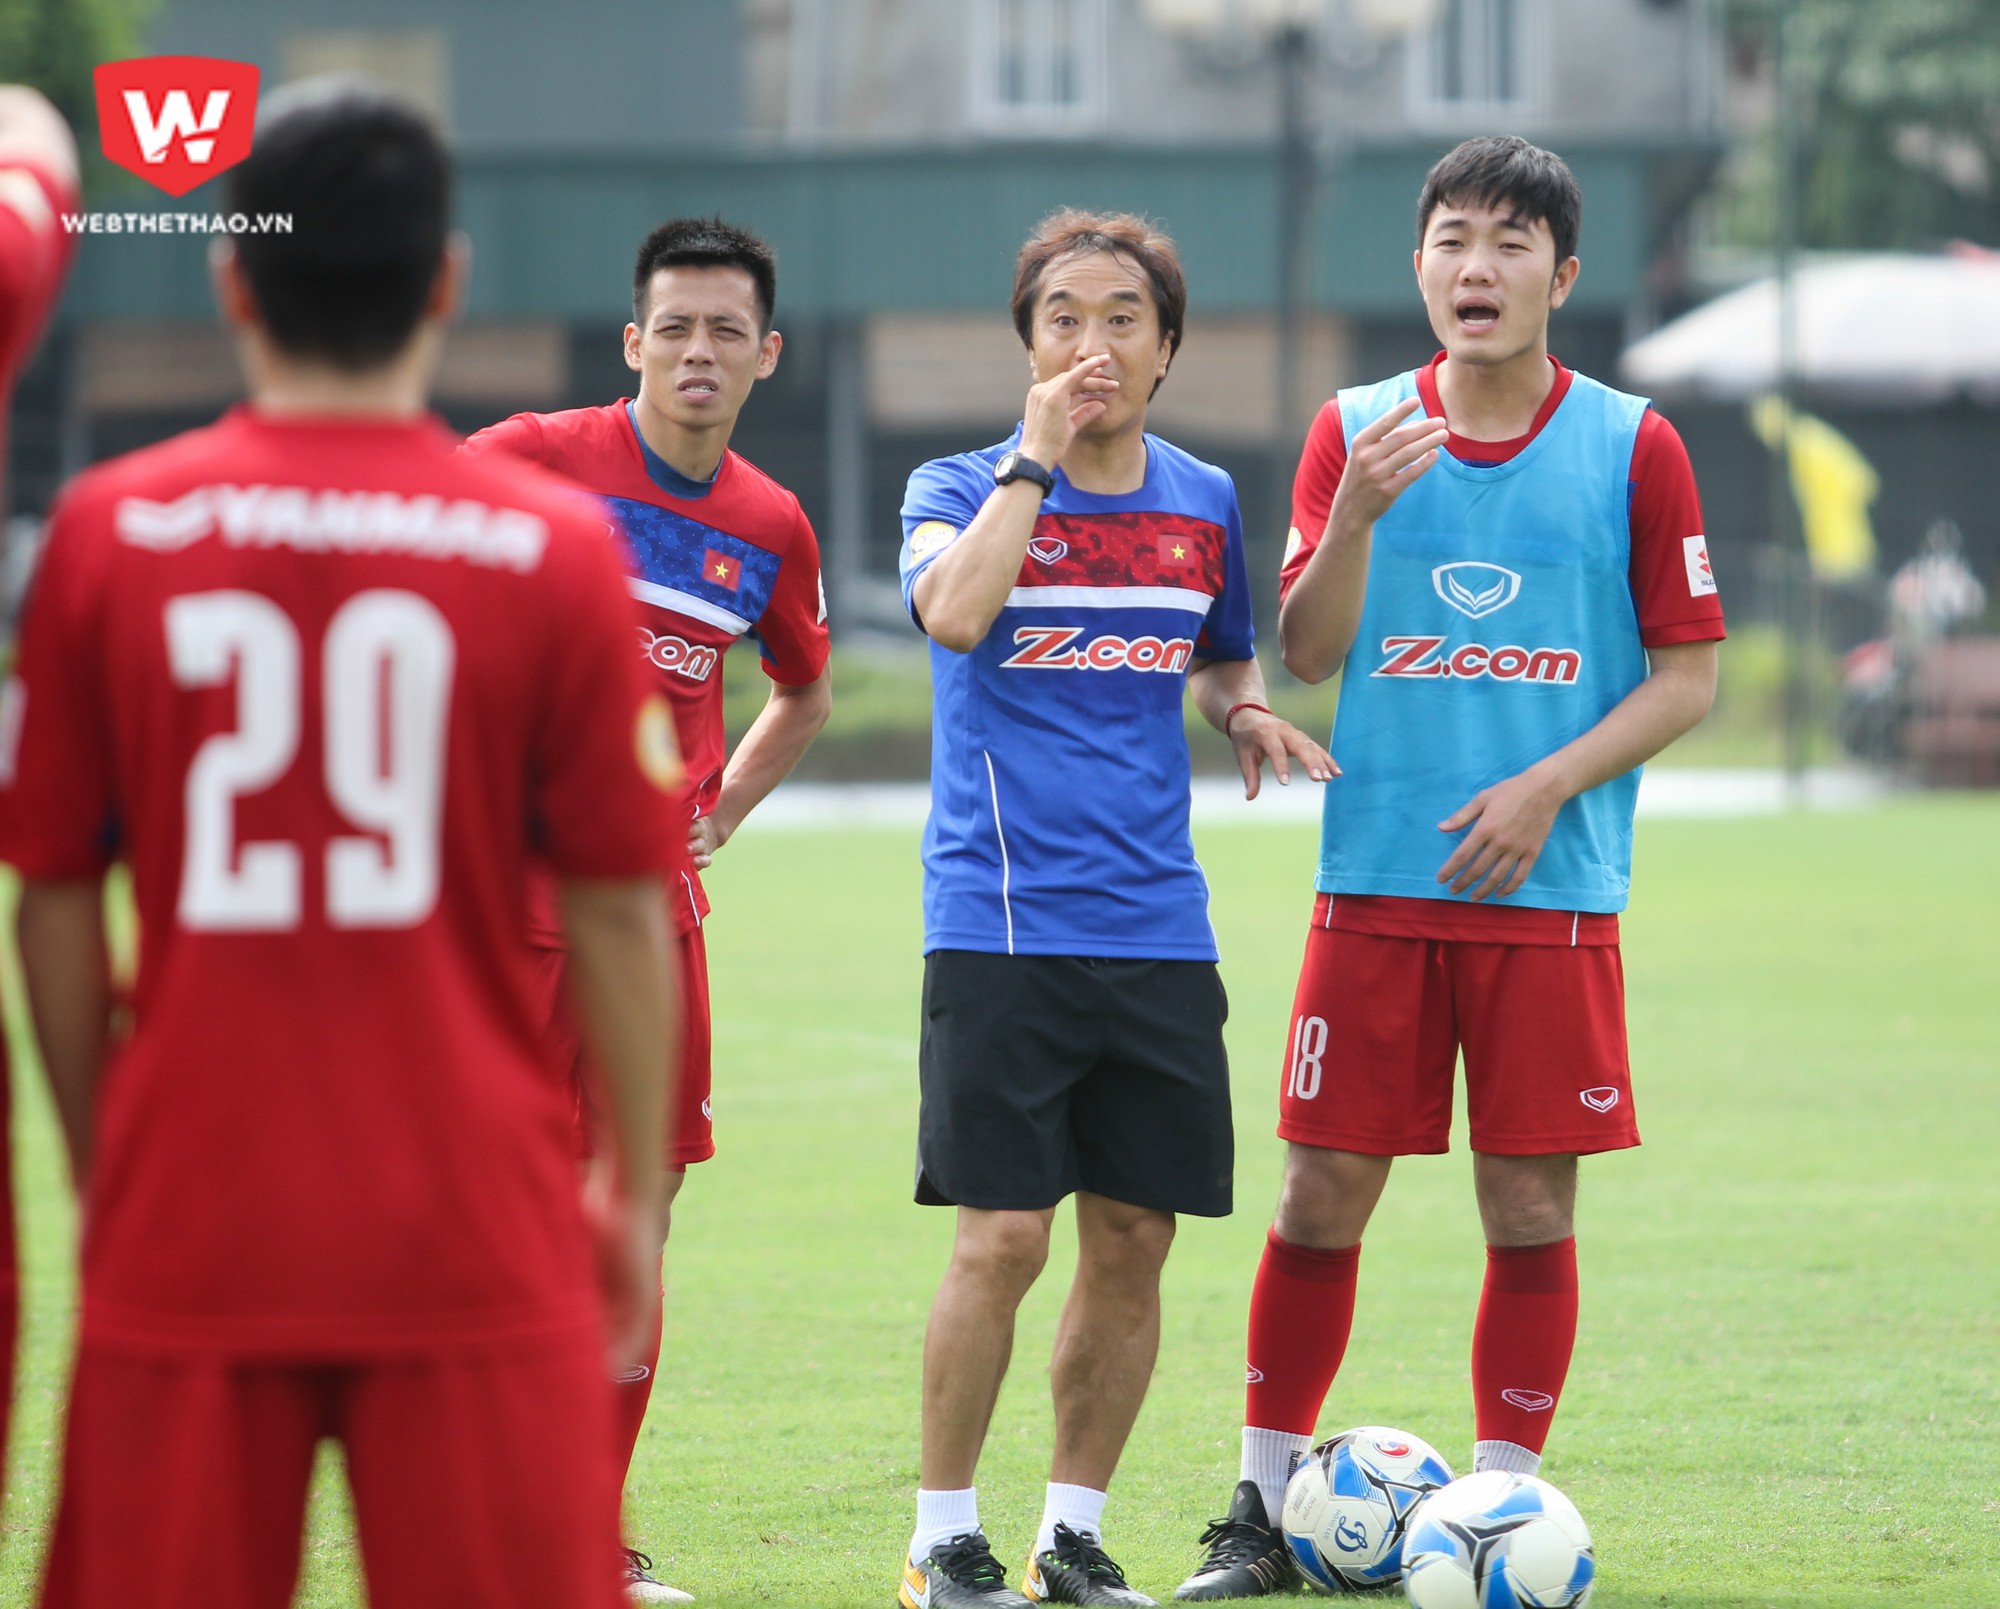 HLV Park Hang-seo và trợ lý Lee Young Jin (ảnh) muốn các tuyển thủ giao tiếp với nhau nhiều hơn trên sân. Ảnh: Trung Thu.